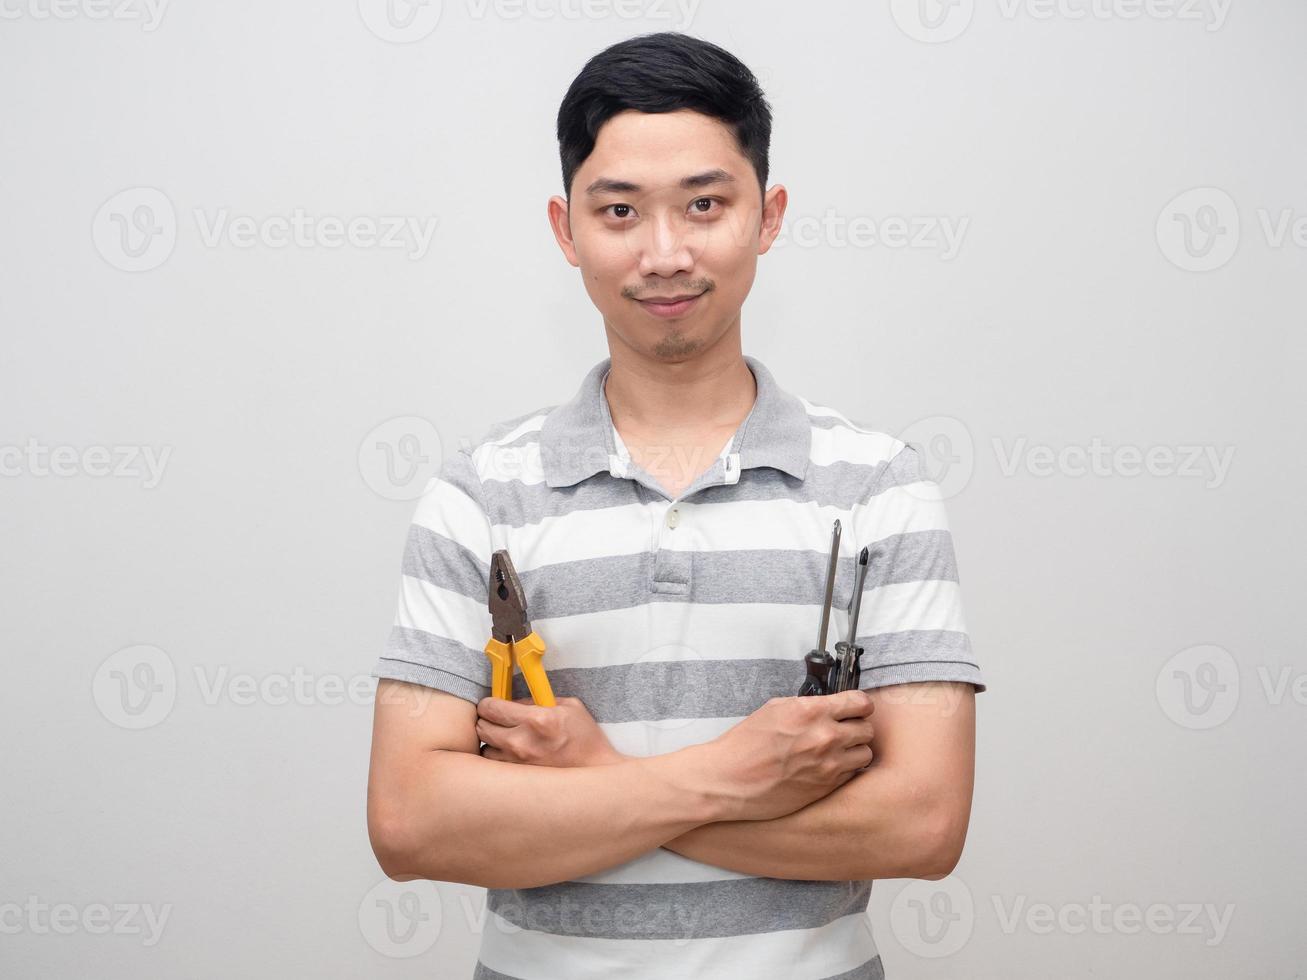 jeune homme chemise rayée réparation homme concept confiant tenir pinces et tournevis photo